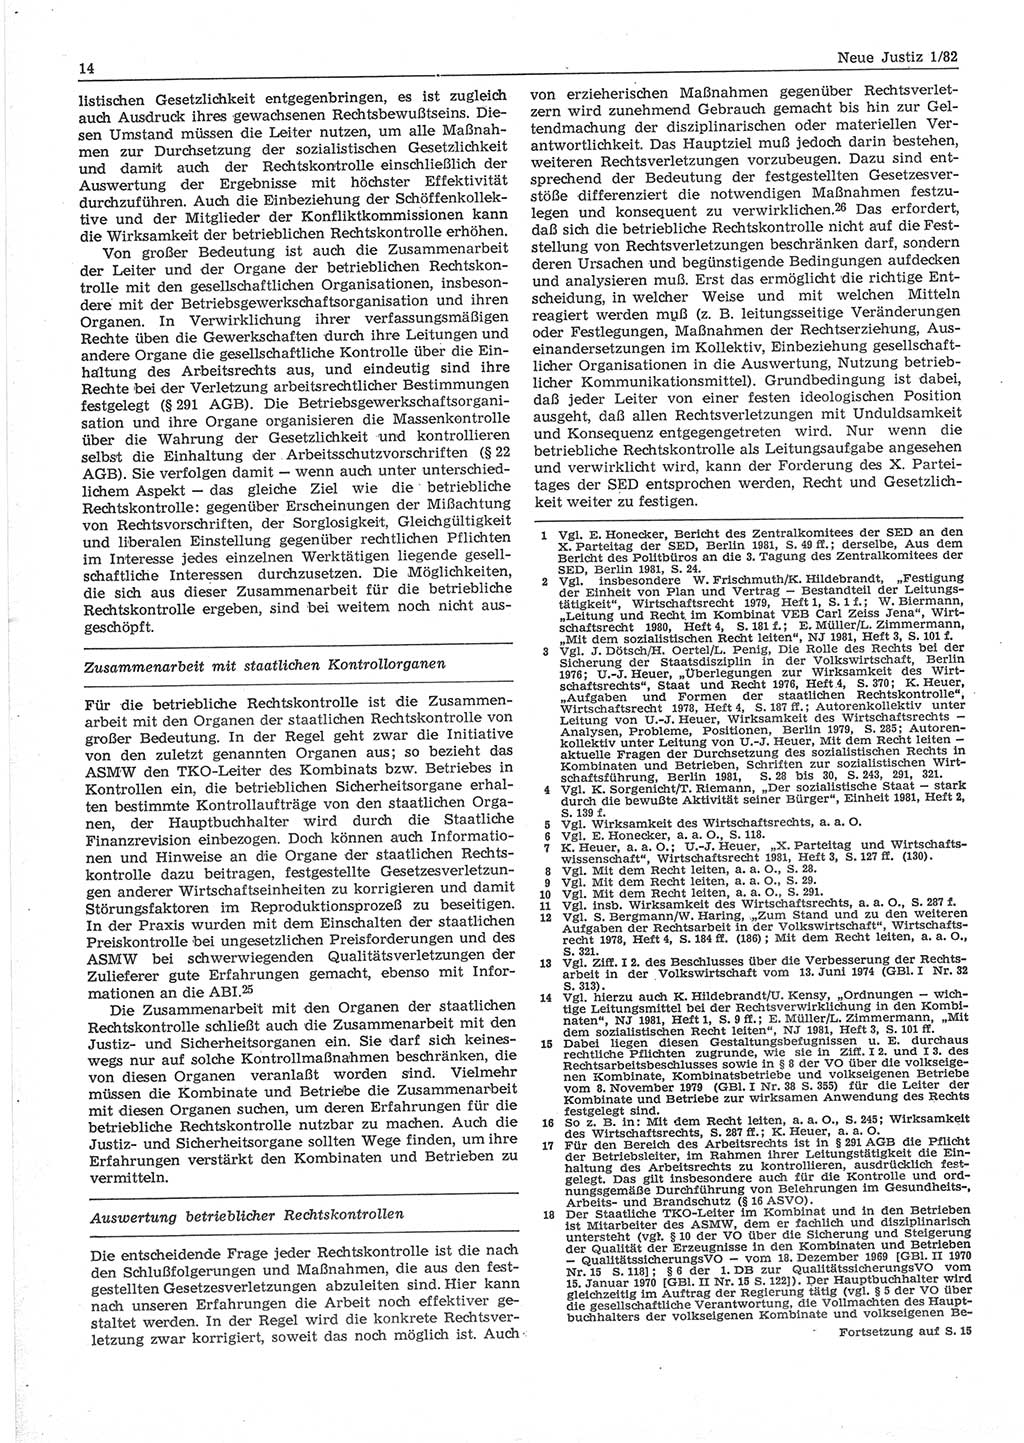 Neue Justiz (NJ), Zeitschrift für sozialistisches Recht und Gesetzlichkeit [Deutsche Demokratische Republik (DDR)], 36. Jahrgang 1982, Seite 14 (NJ DDR 1982, S. 14)